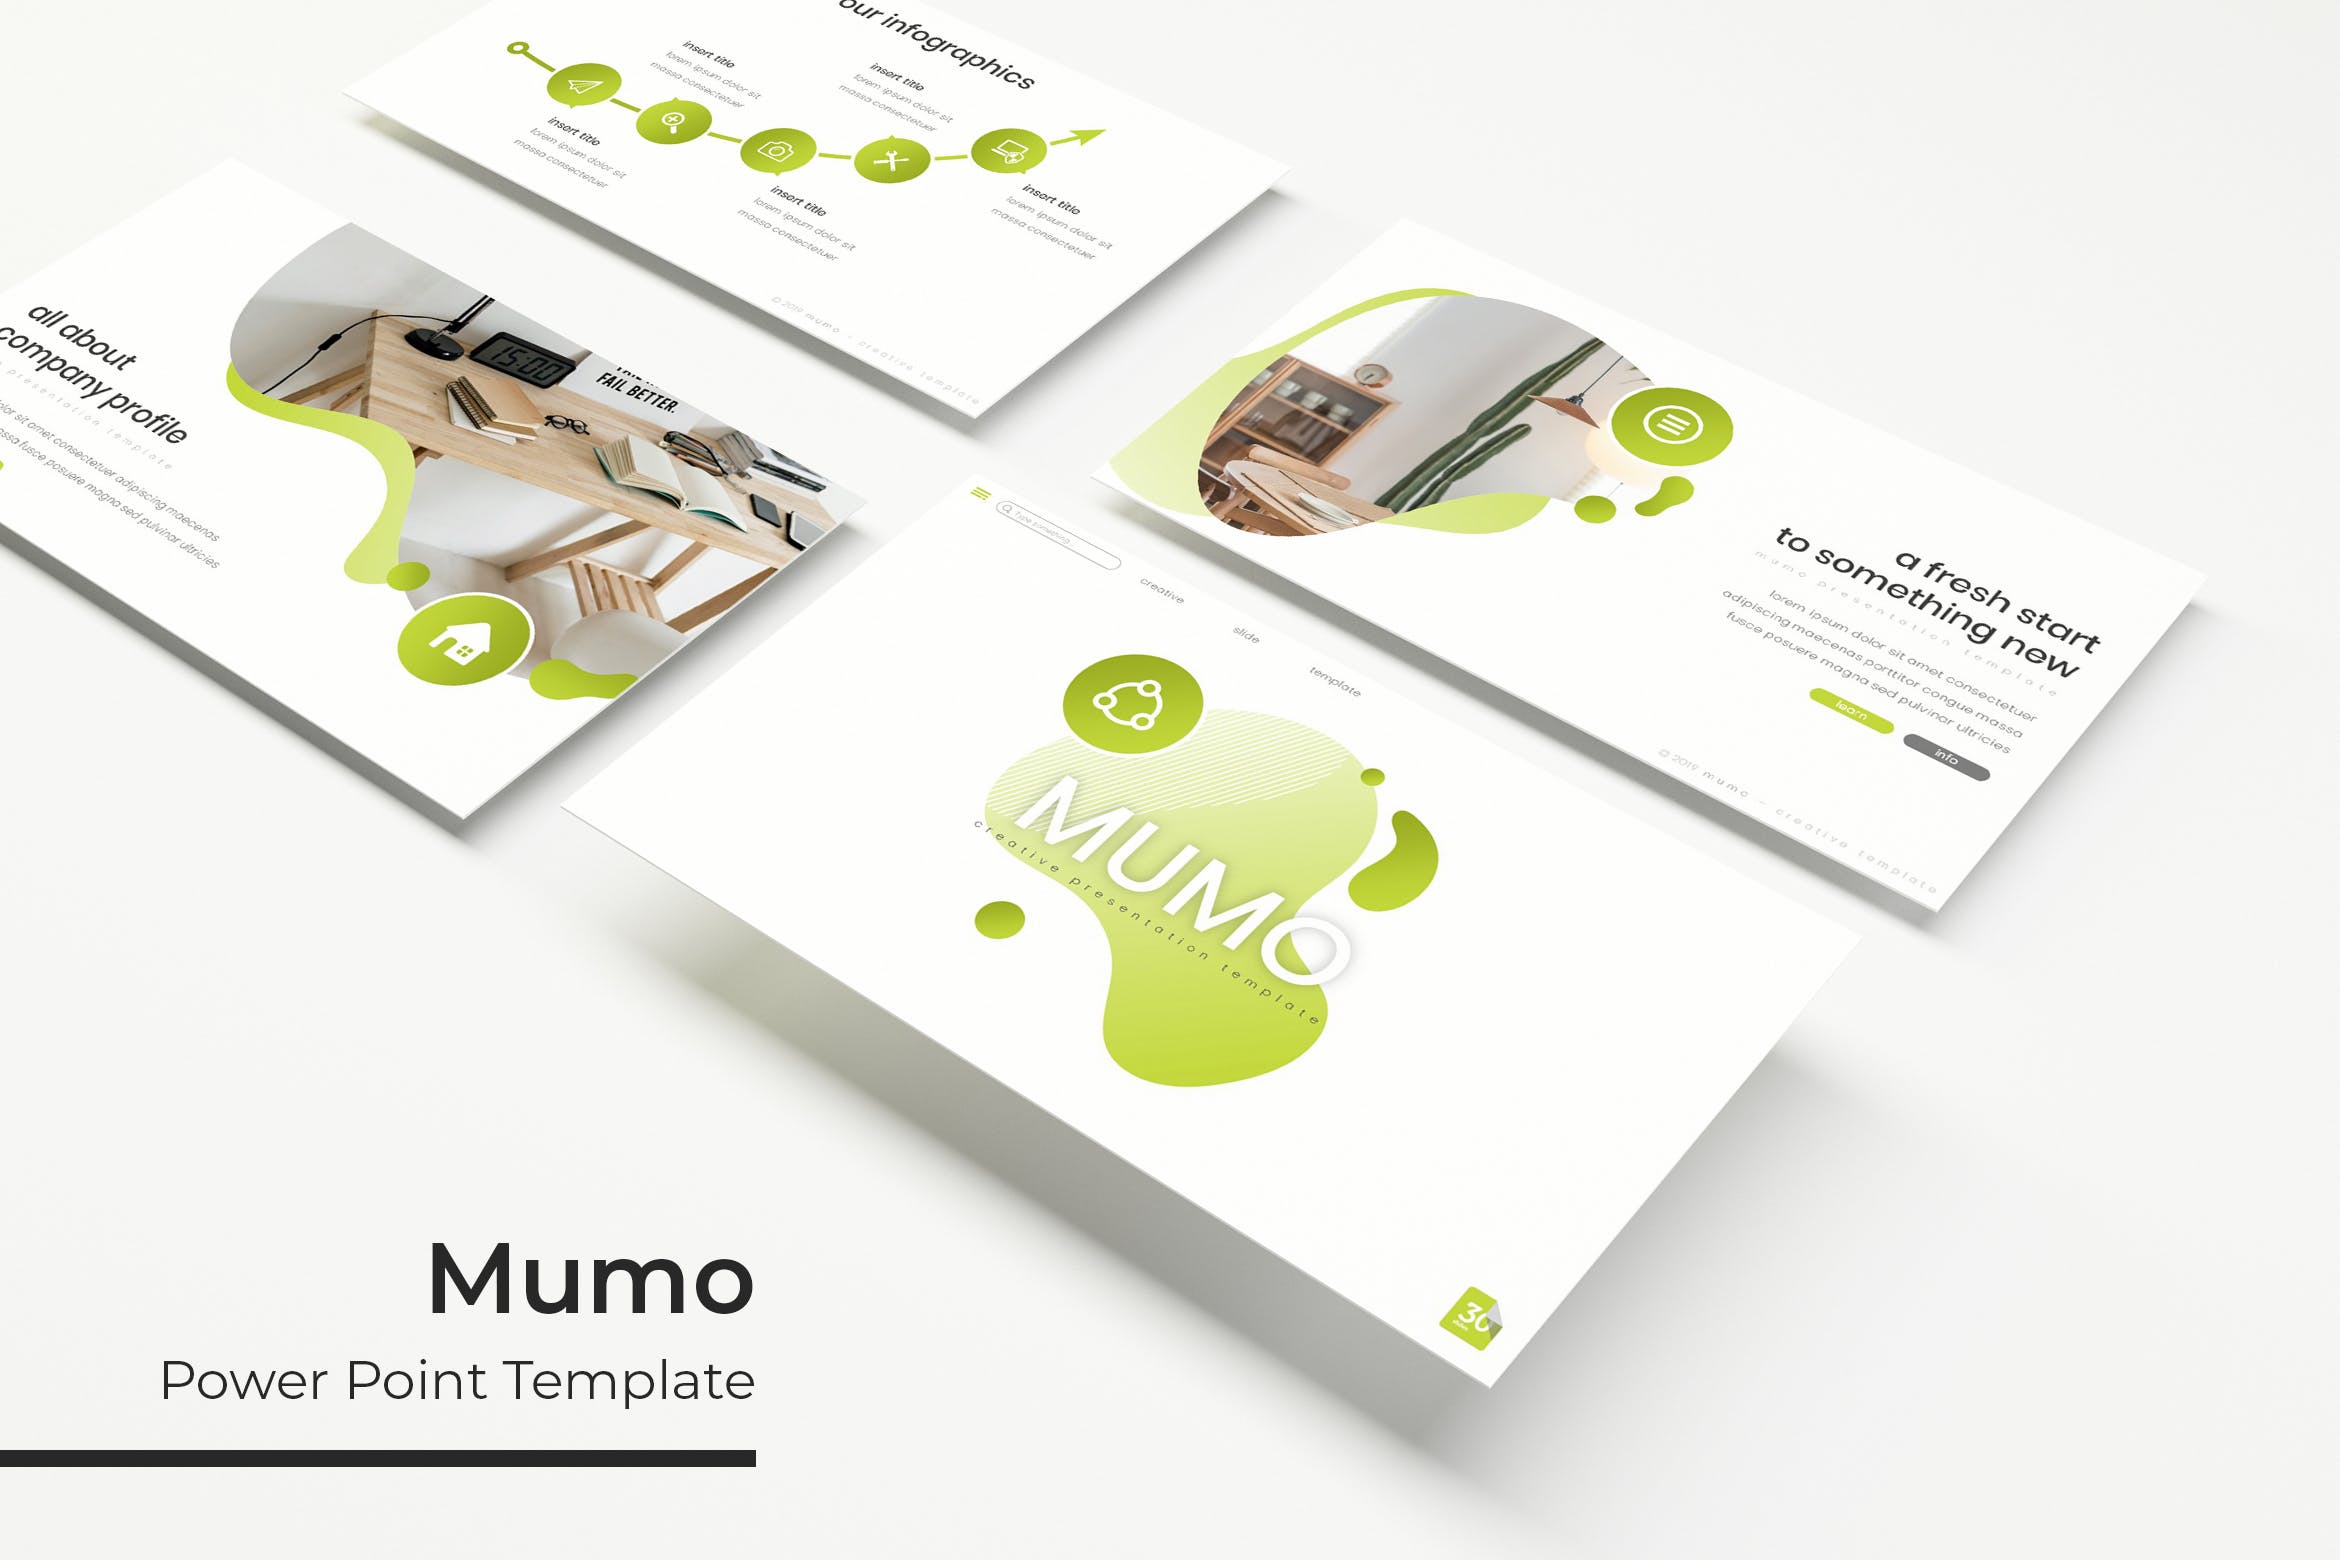 室内设计企业介绍PPT幻灯片模板 Mumo – Powerpoint Template插图